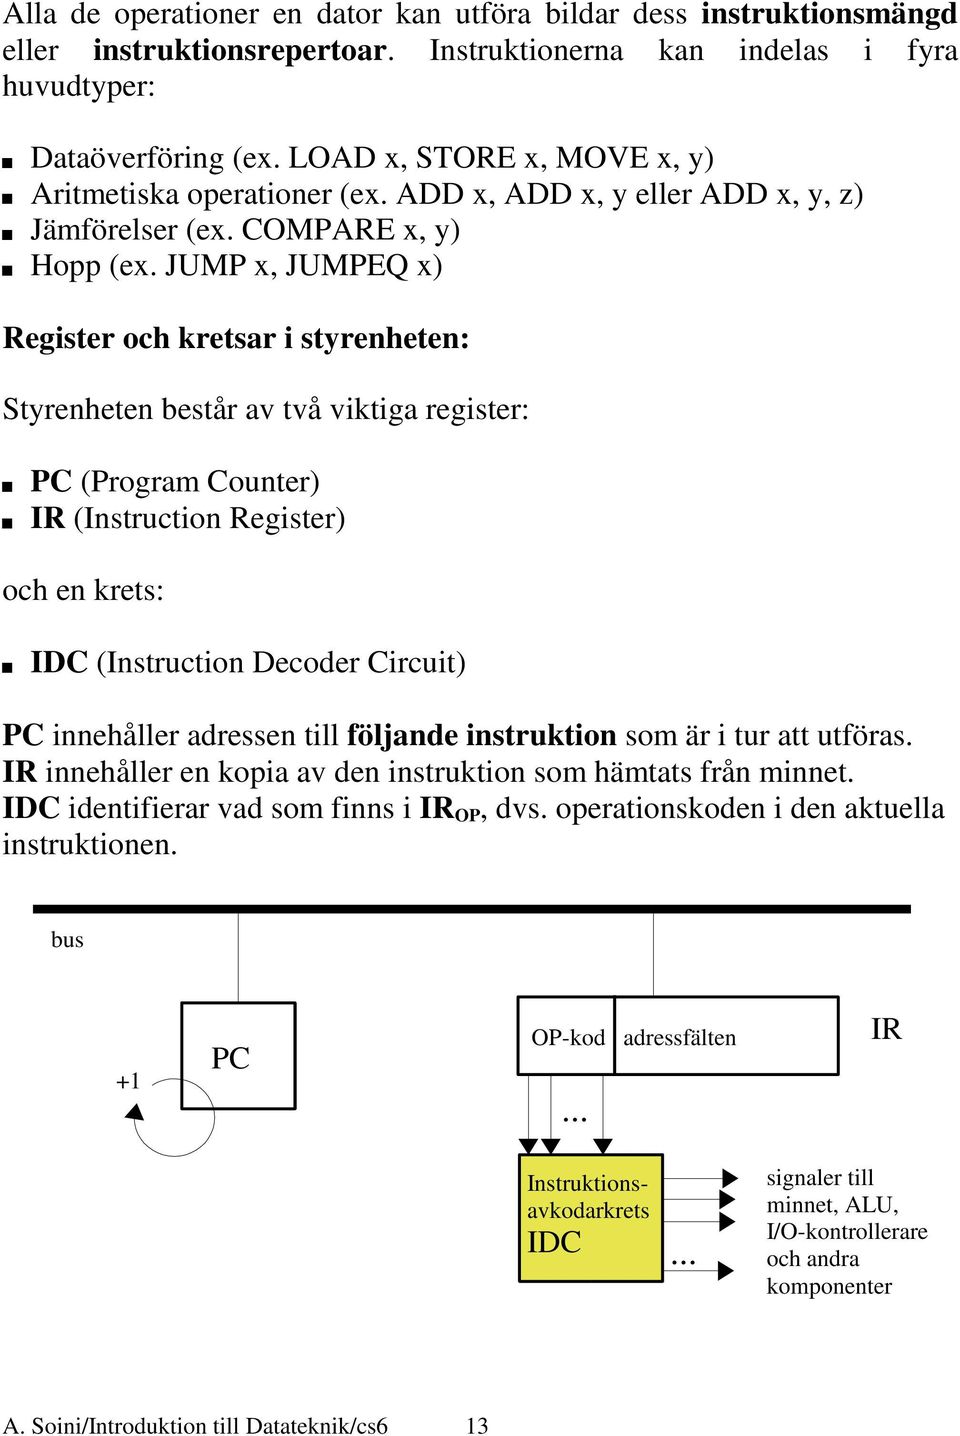 JUMP x, JUMPEQ x) Register och kretsar i styrenheten: Styrenheten består av två viktiga register: PC (Program Counter) IR (Instruction Register) och en krets: IDC (Instruction Decoder Circuit) PC